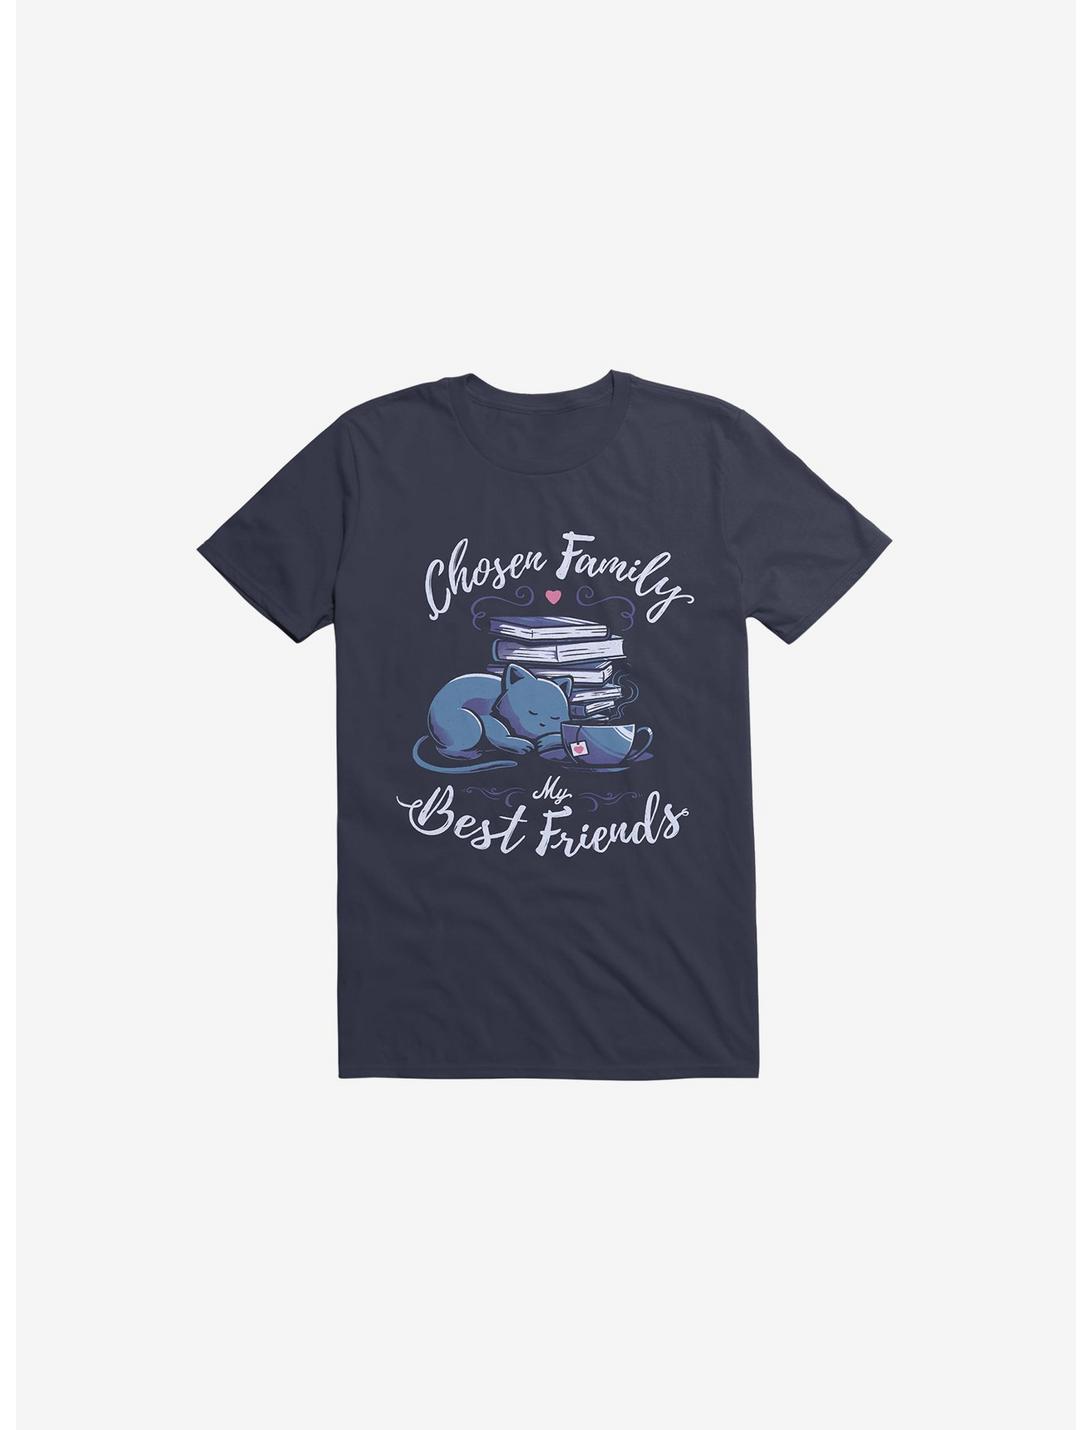 Chosen Family My Best Friends Navy Blue T-Shirt, NAVY, hi-res